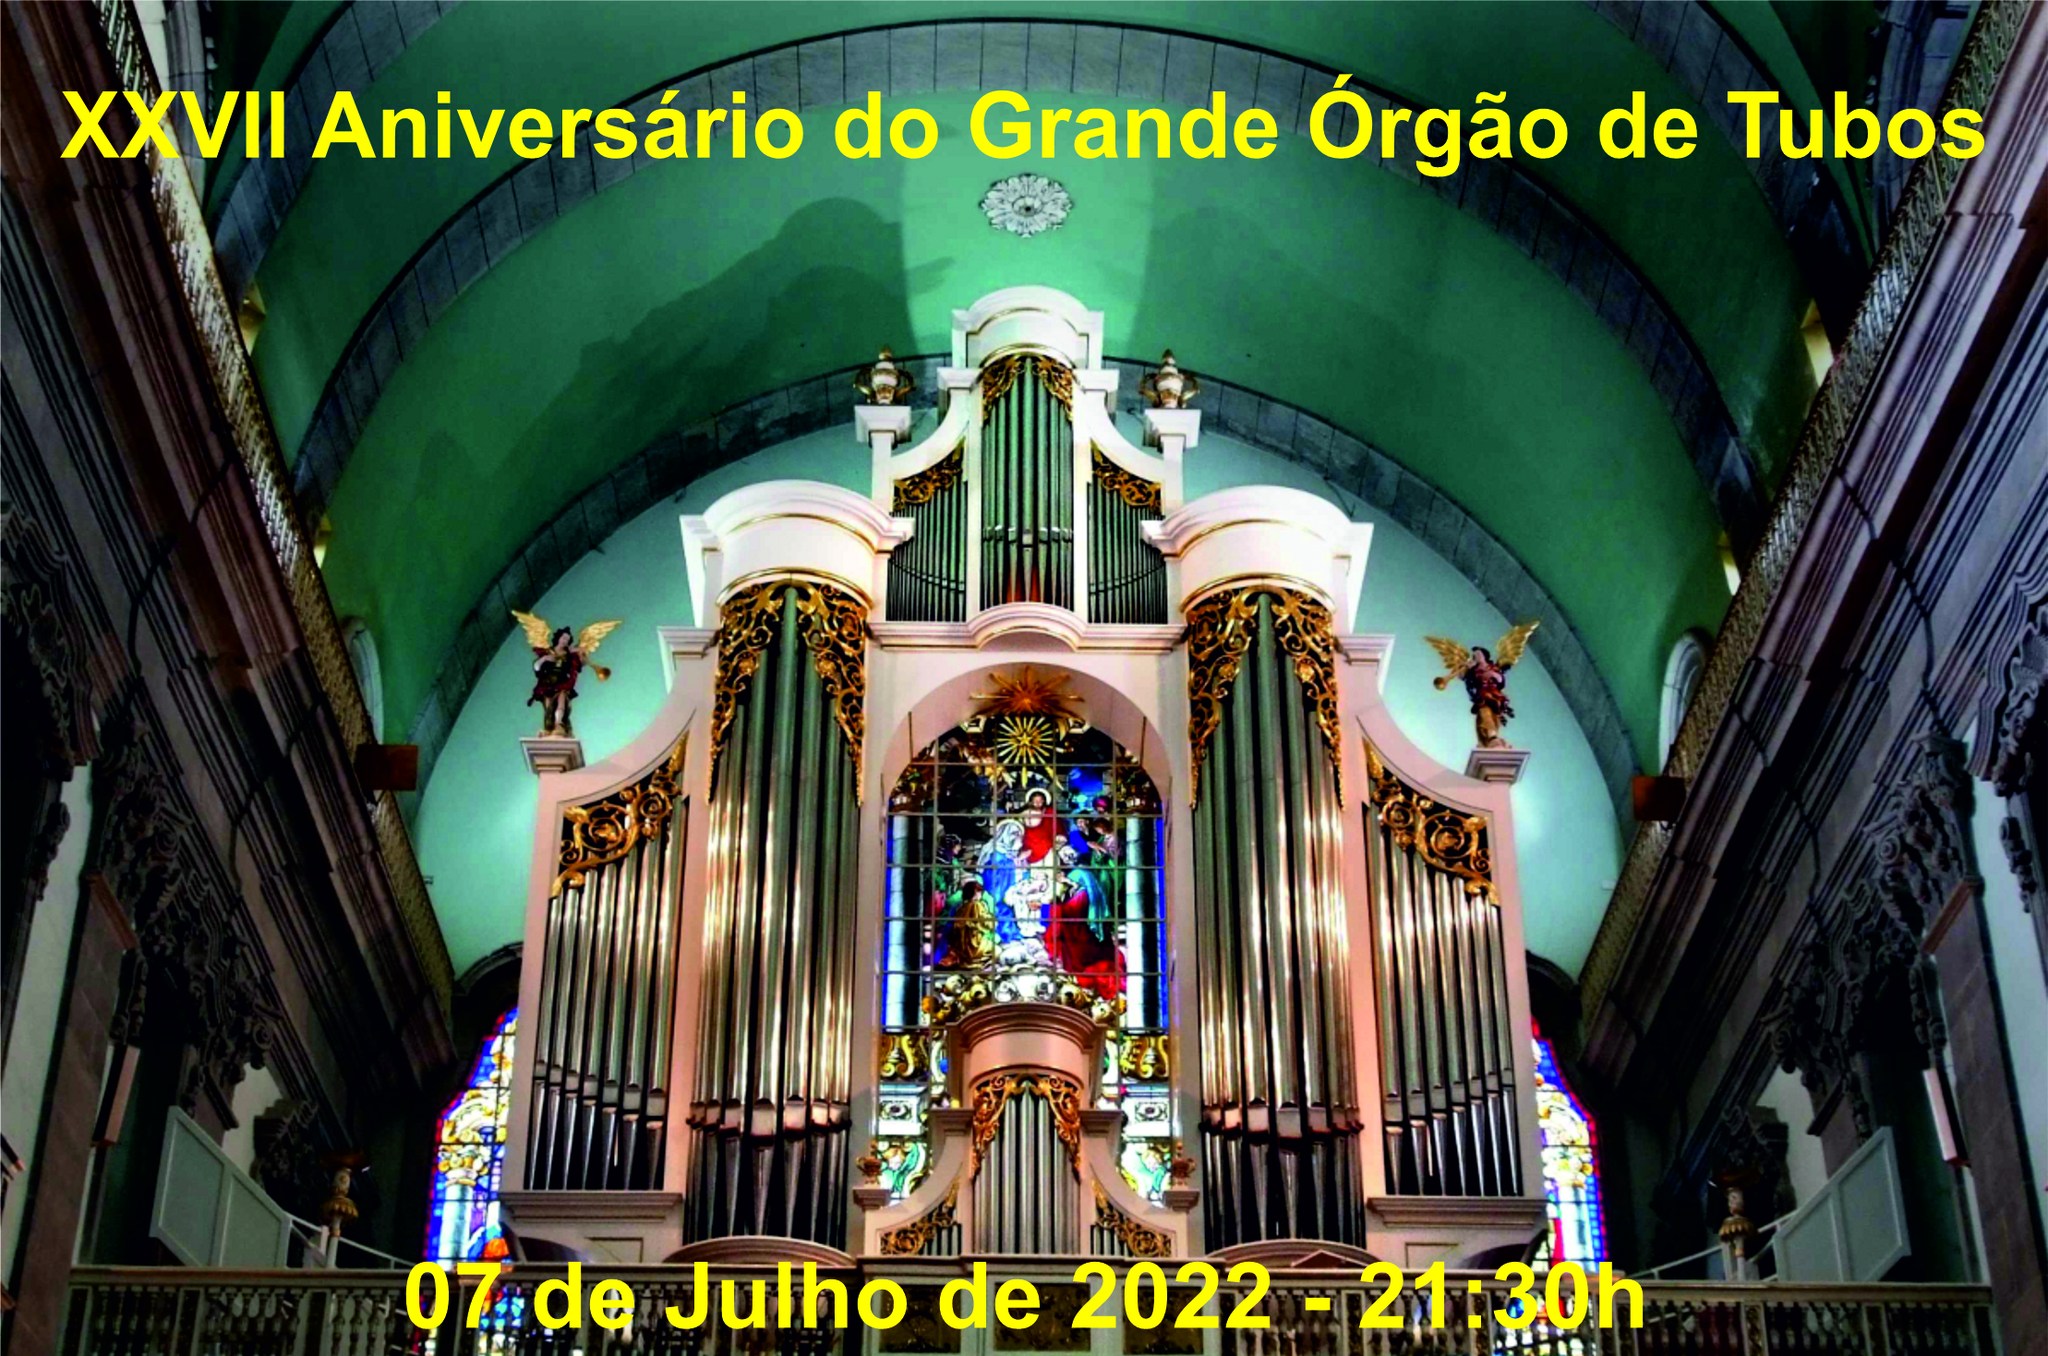 XXVII Aniversário do Grande Órgão de Tubos da Igreja da Lapa